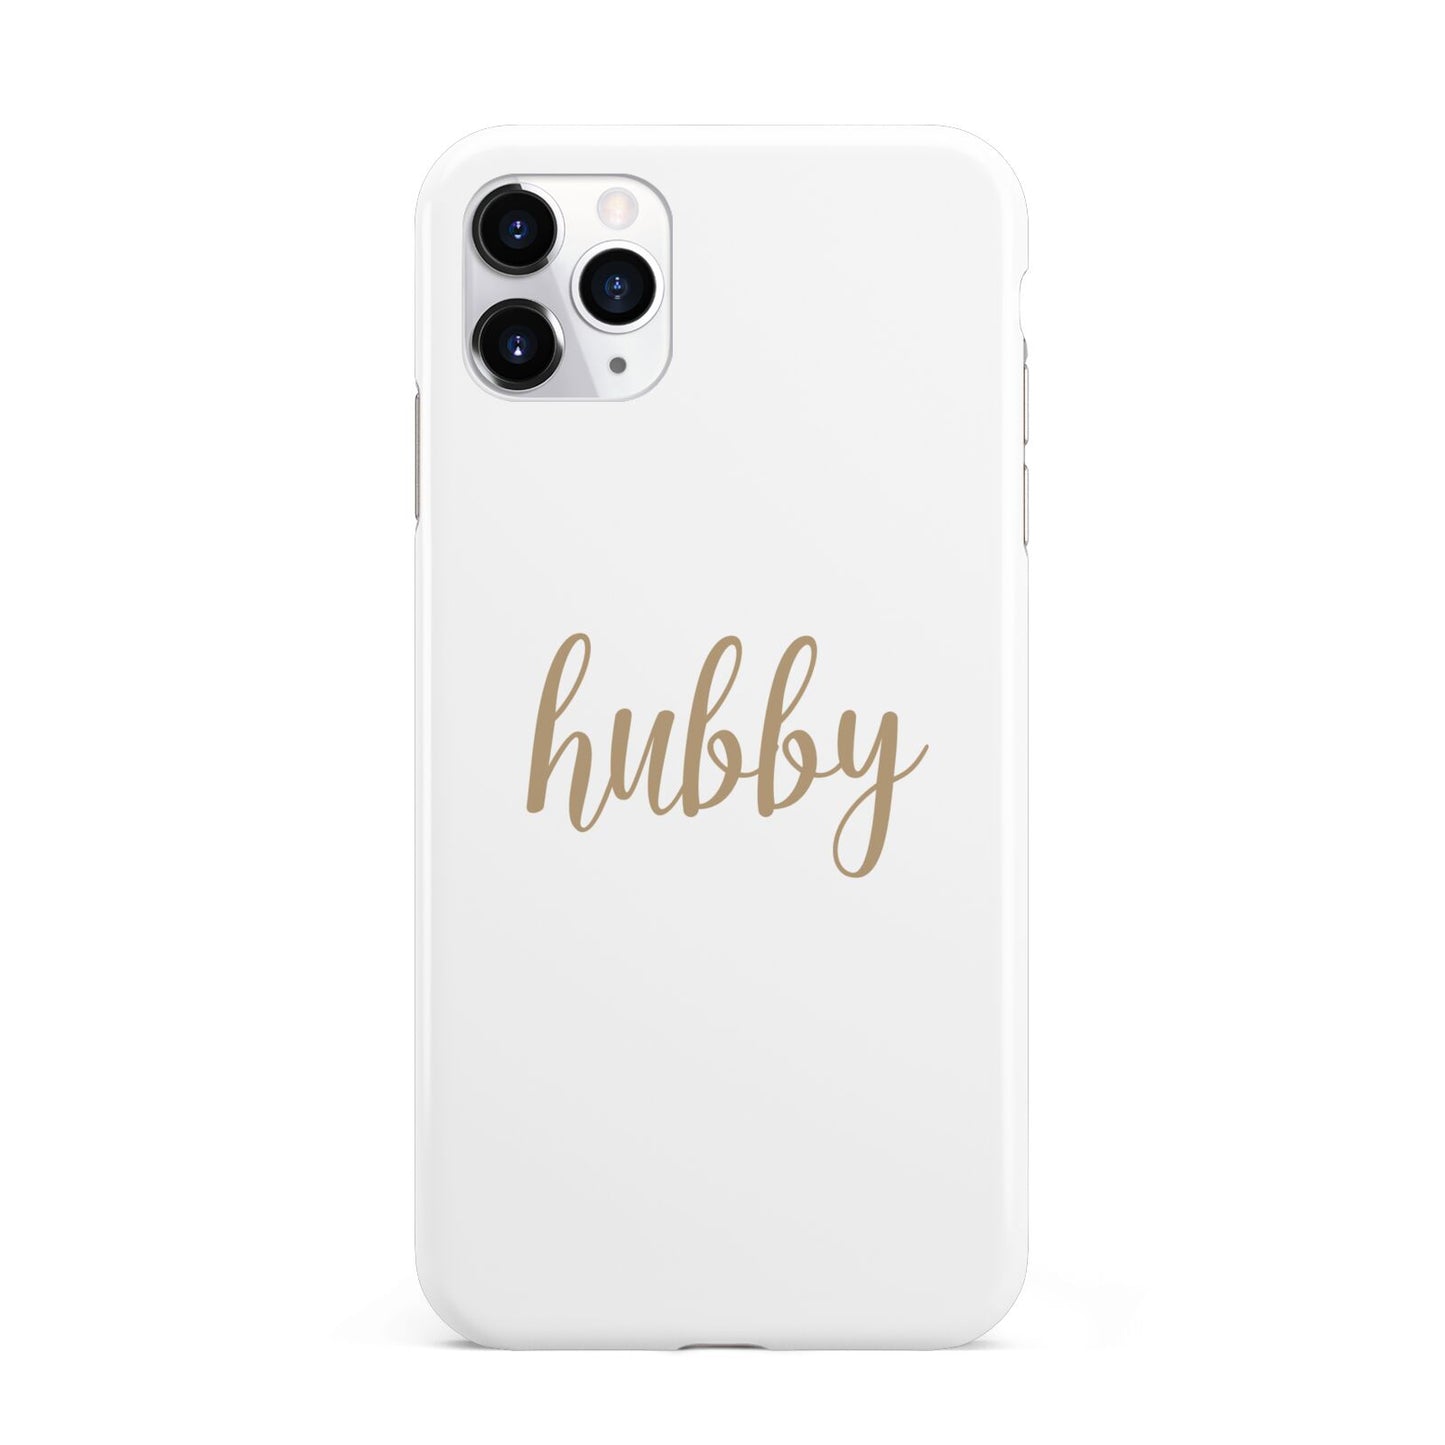 Hubby iPhone 11 Pro Max 3D Tough Case